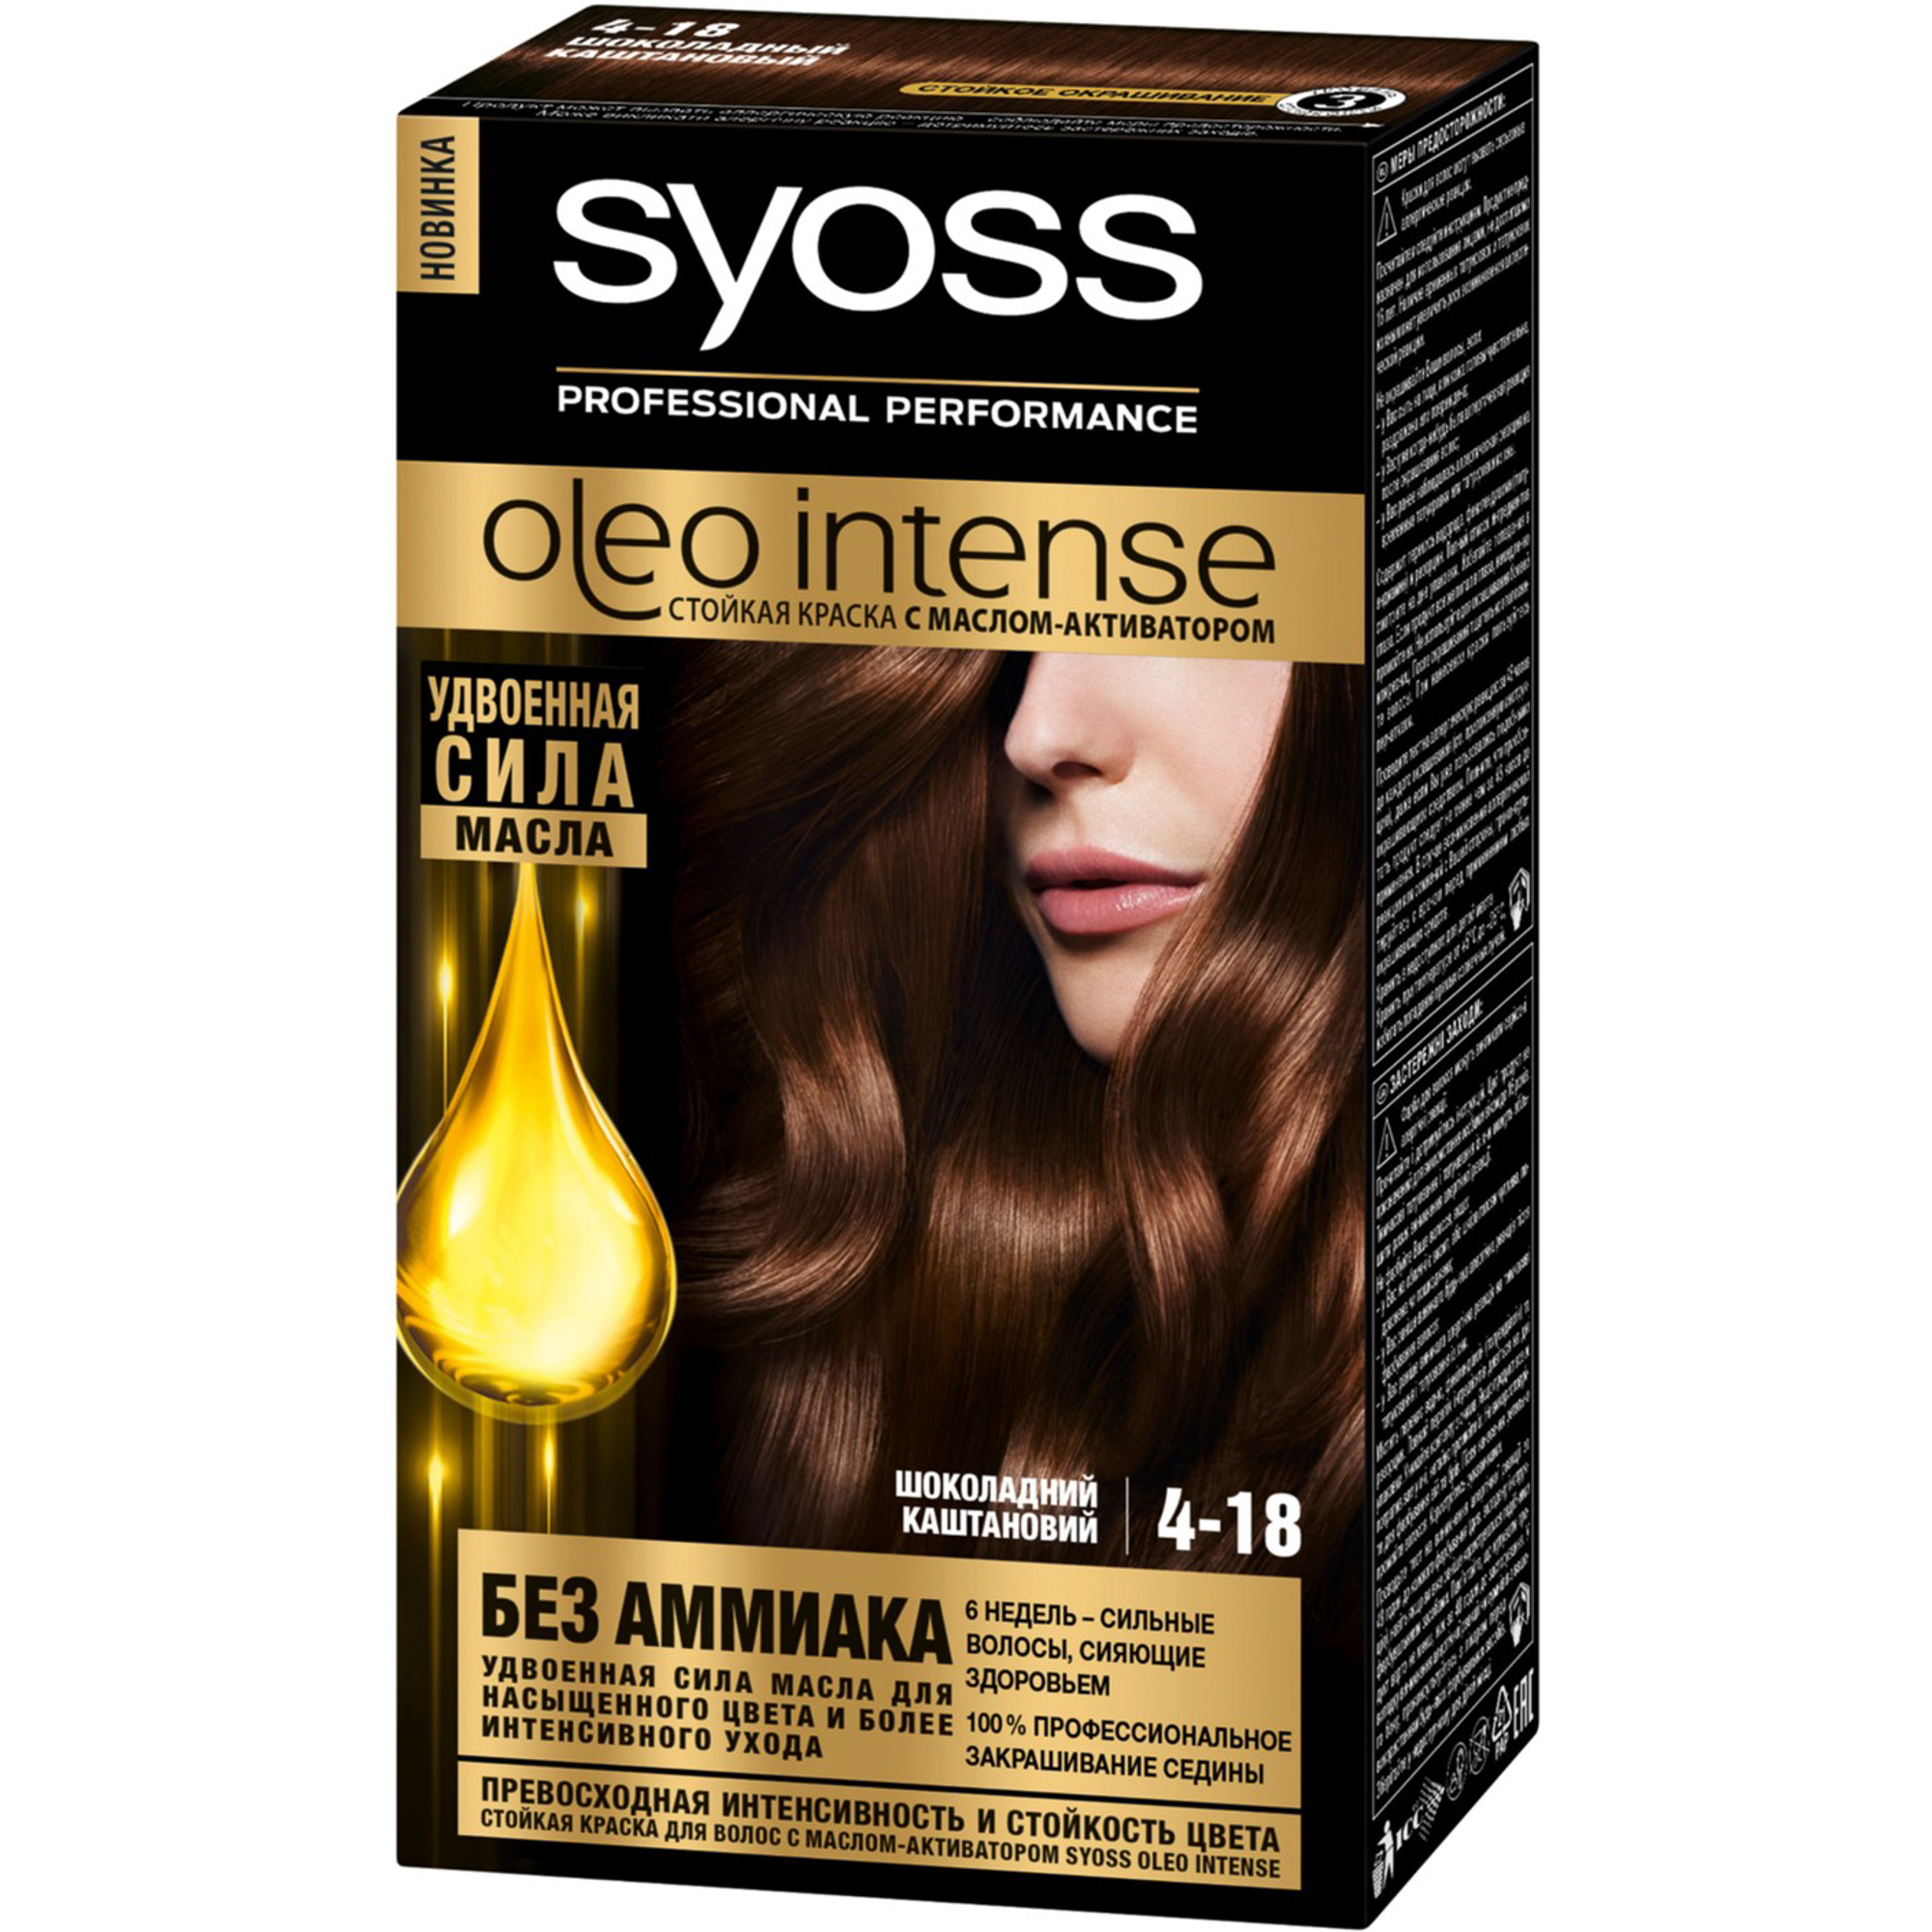 Краска для волос Syoss Oleo Intense 4-18 Шоколадный каштановый краска для волос 4 18 шоколадный каштановый oleo intense syoss сьосс 115мл